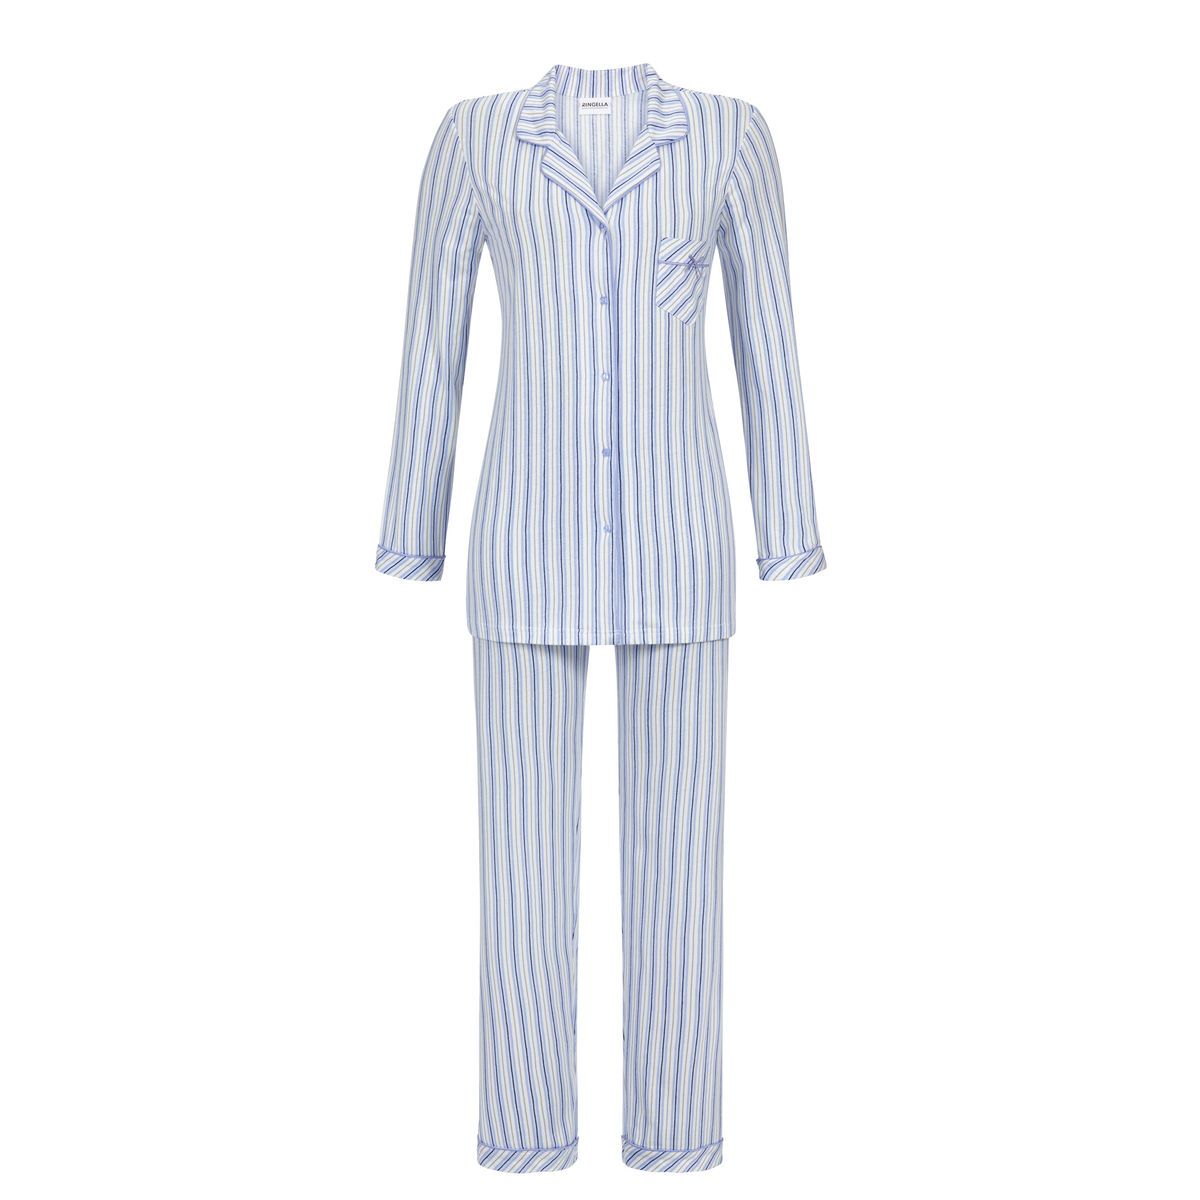 Gronden versneller paus Blauw gestreepte Ringella pyjama | Gratis verzending Pyjama-webshop |  Online de mooiste pyjama's, nachthemden, ondermode en meer